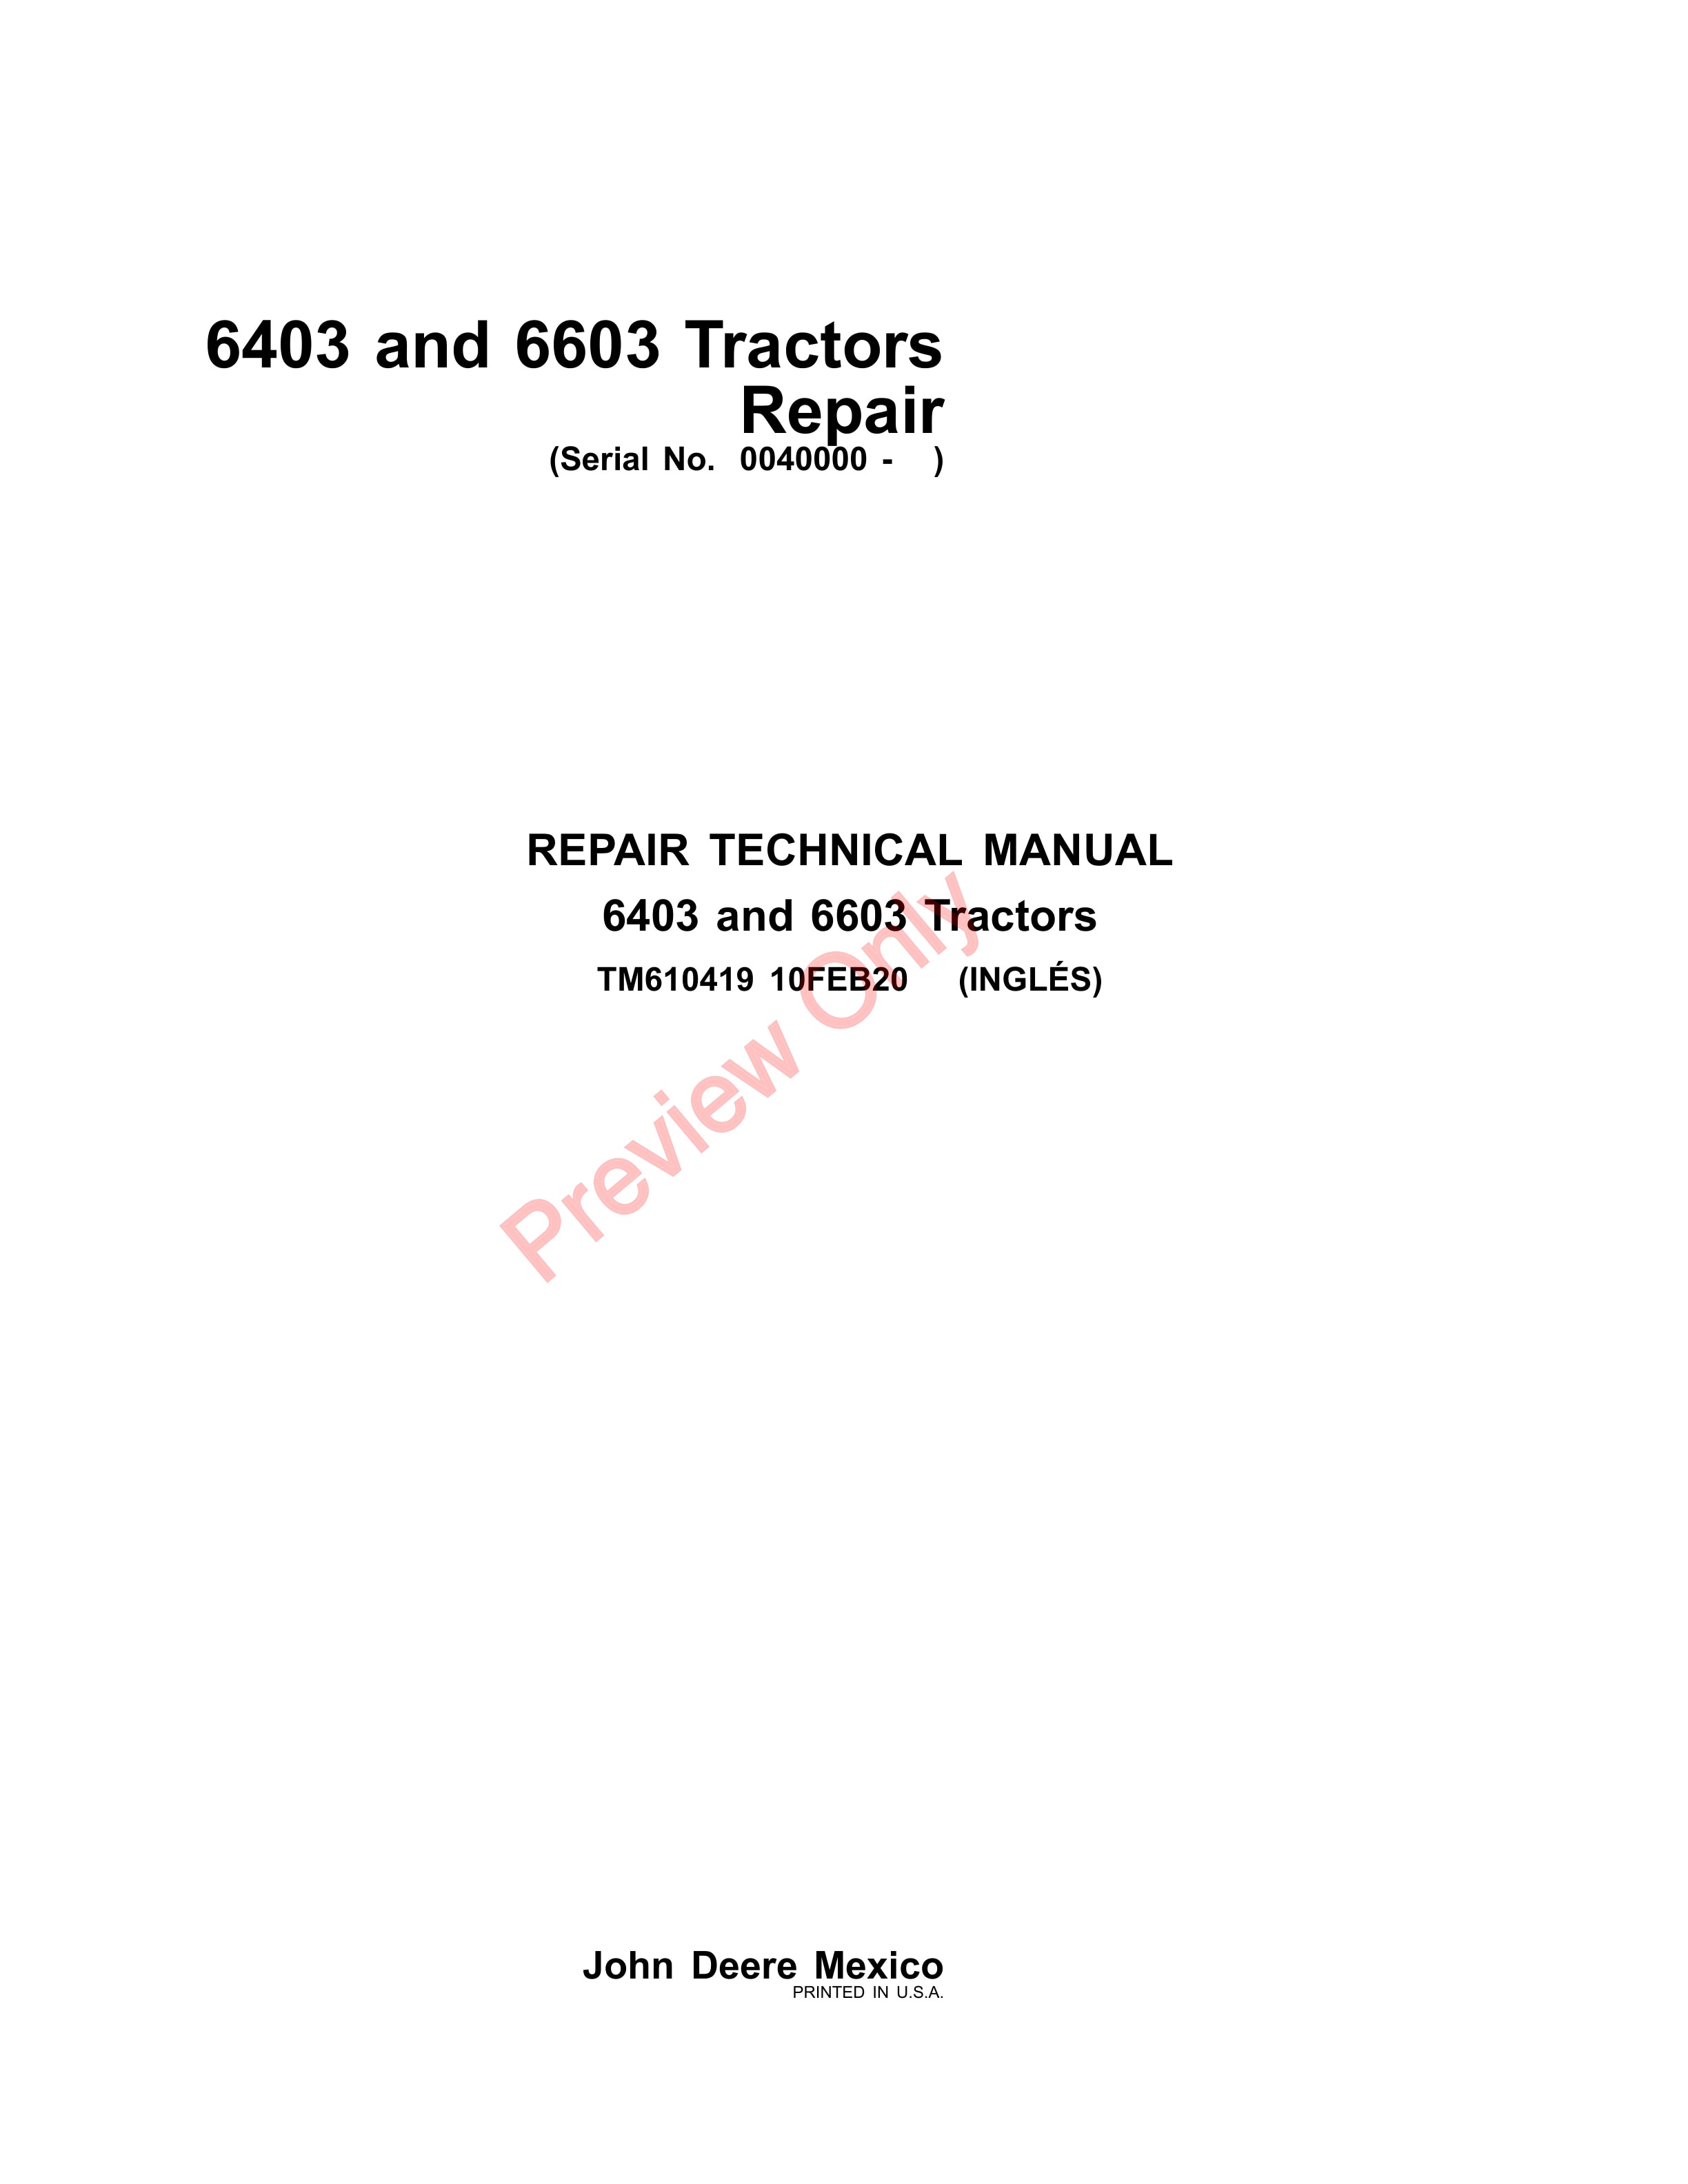 John Deere 6403 and 6603 Tractors Repair Technical Manual TM610419 10FEB20 1